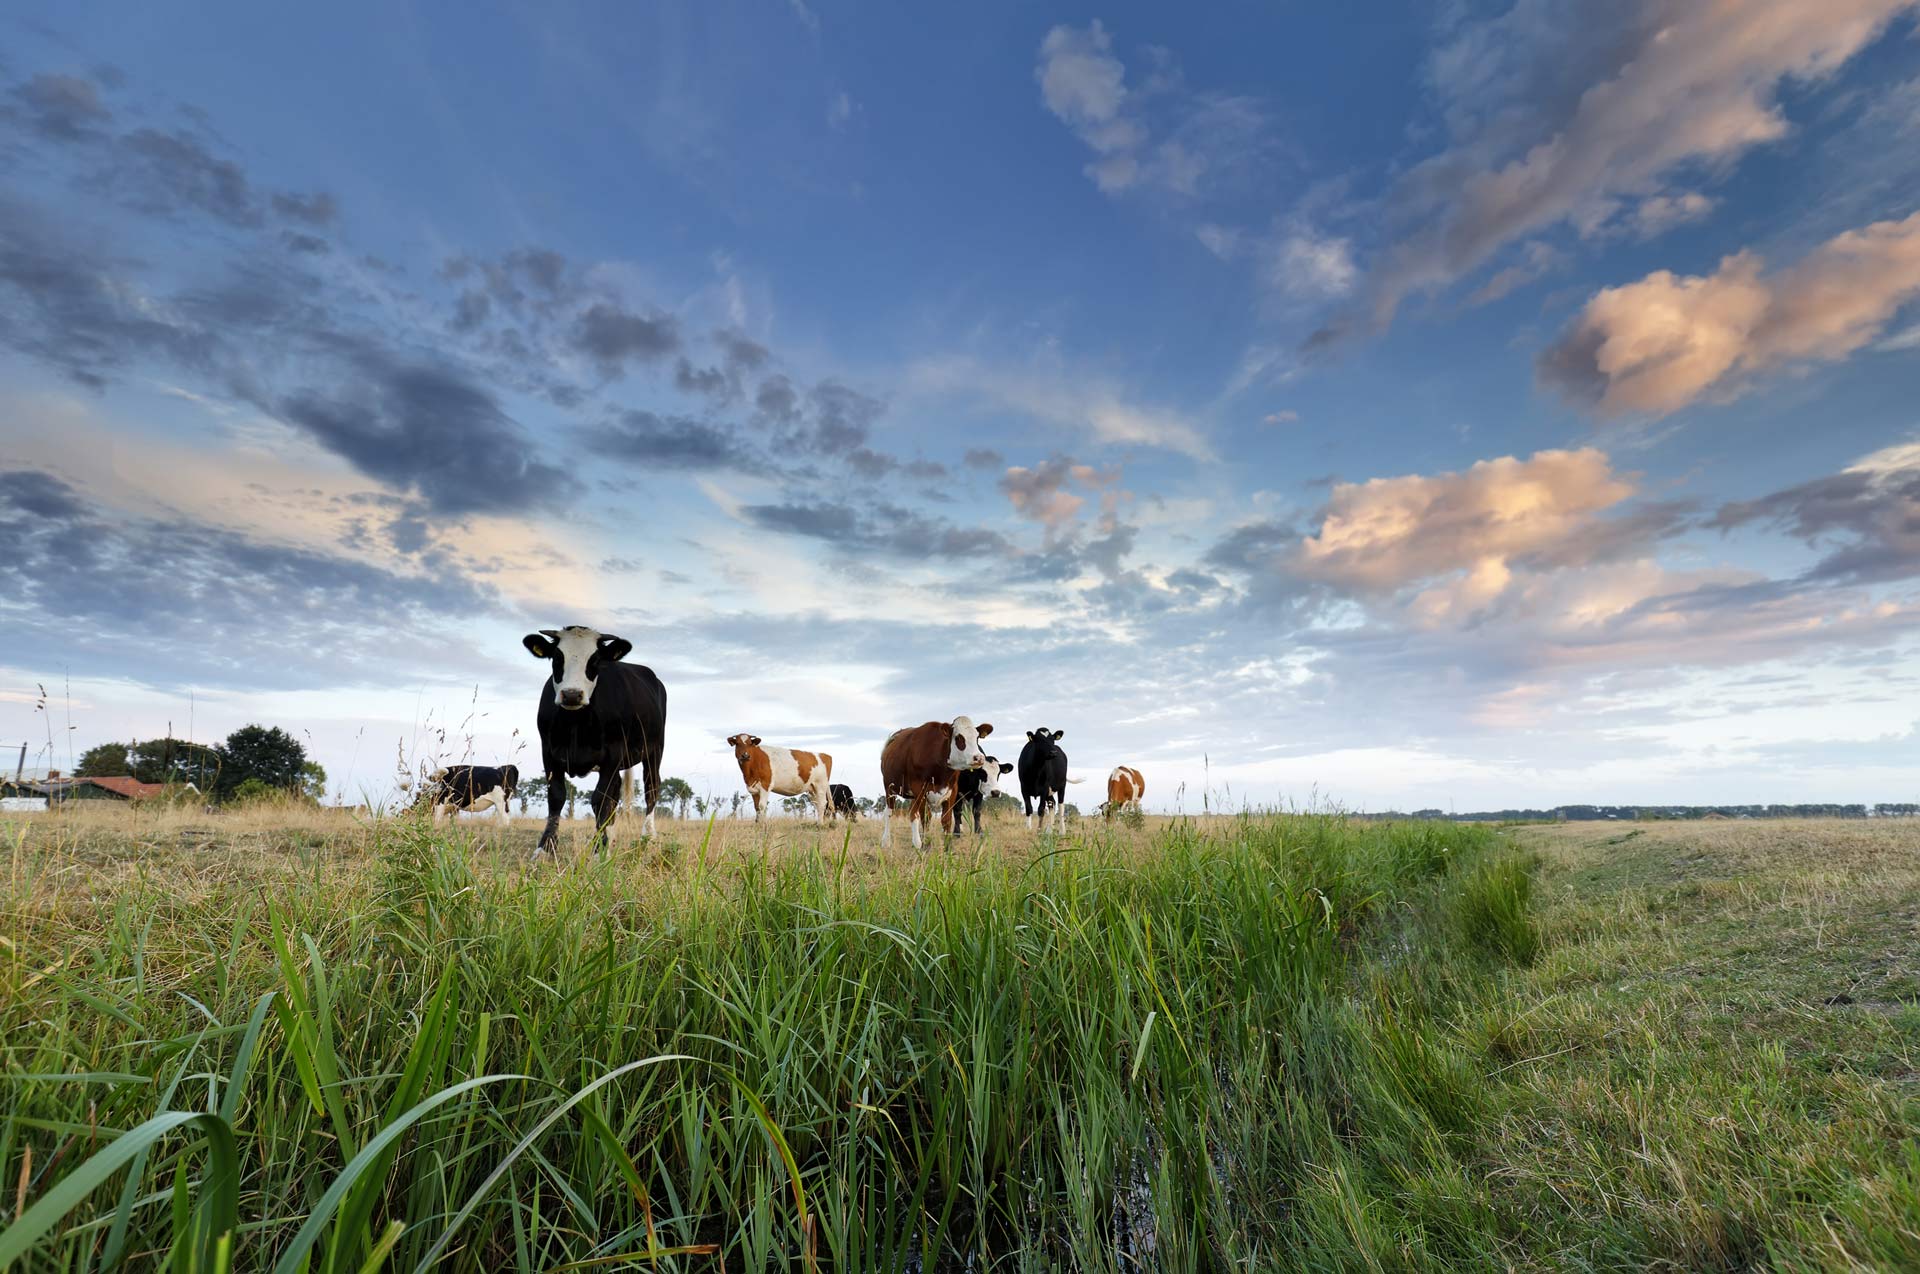 Contre-plongée d'un troupeau de vaches avec ciel lumineux et légèrement nuageux en fond